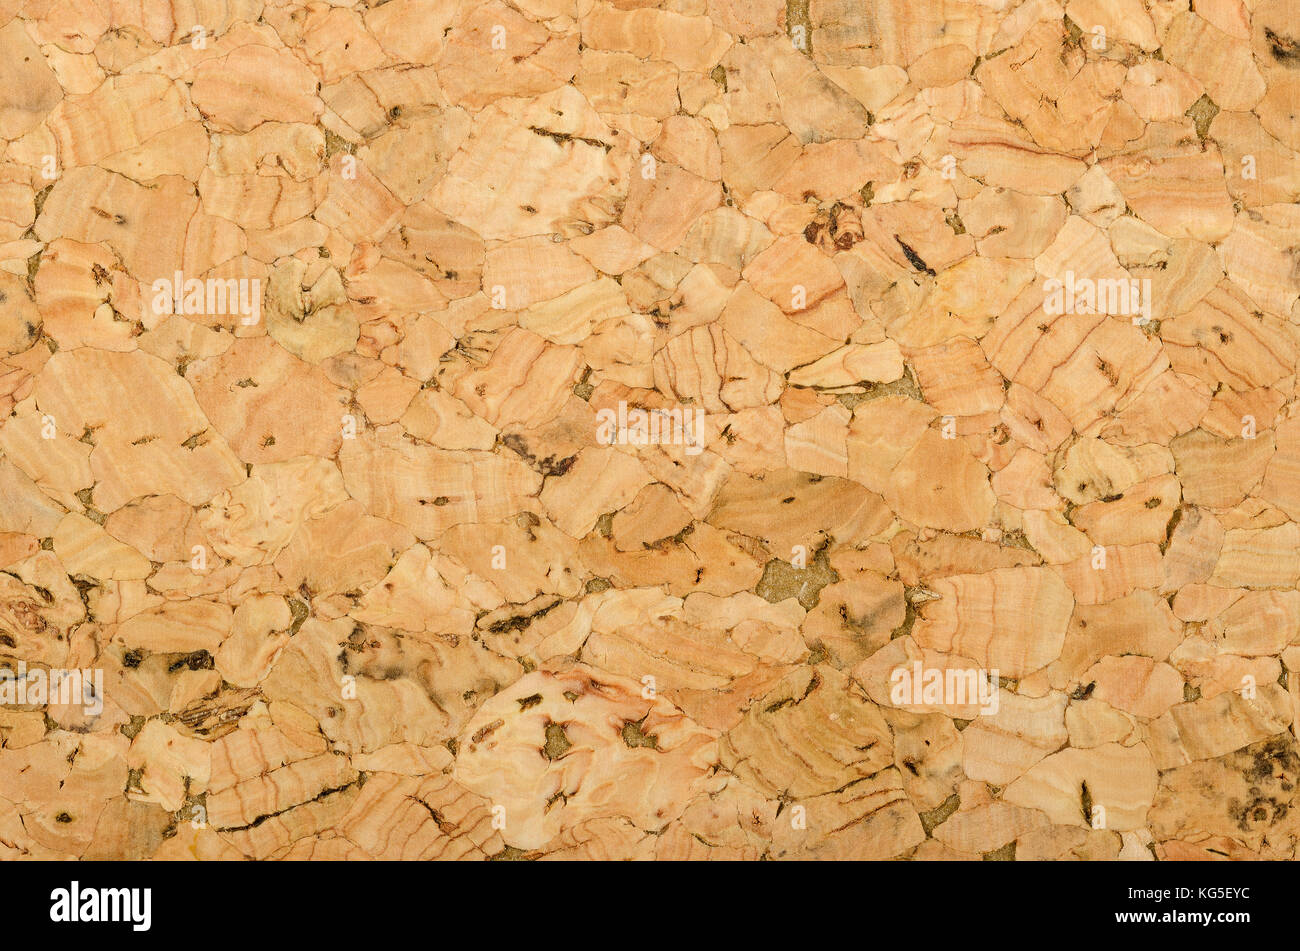 Hoja de corcho superficie con textura gruesa, compuesta de grano rugoso alcornoque, Quercus suber. Los paneles decorativos y las chapas de madera, utilizado como tablones de anuncios. Foto de stock